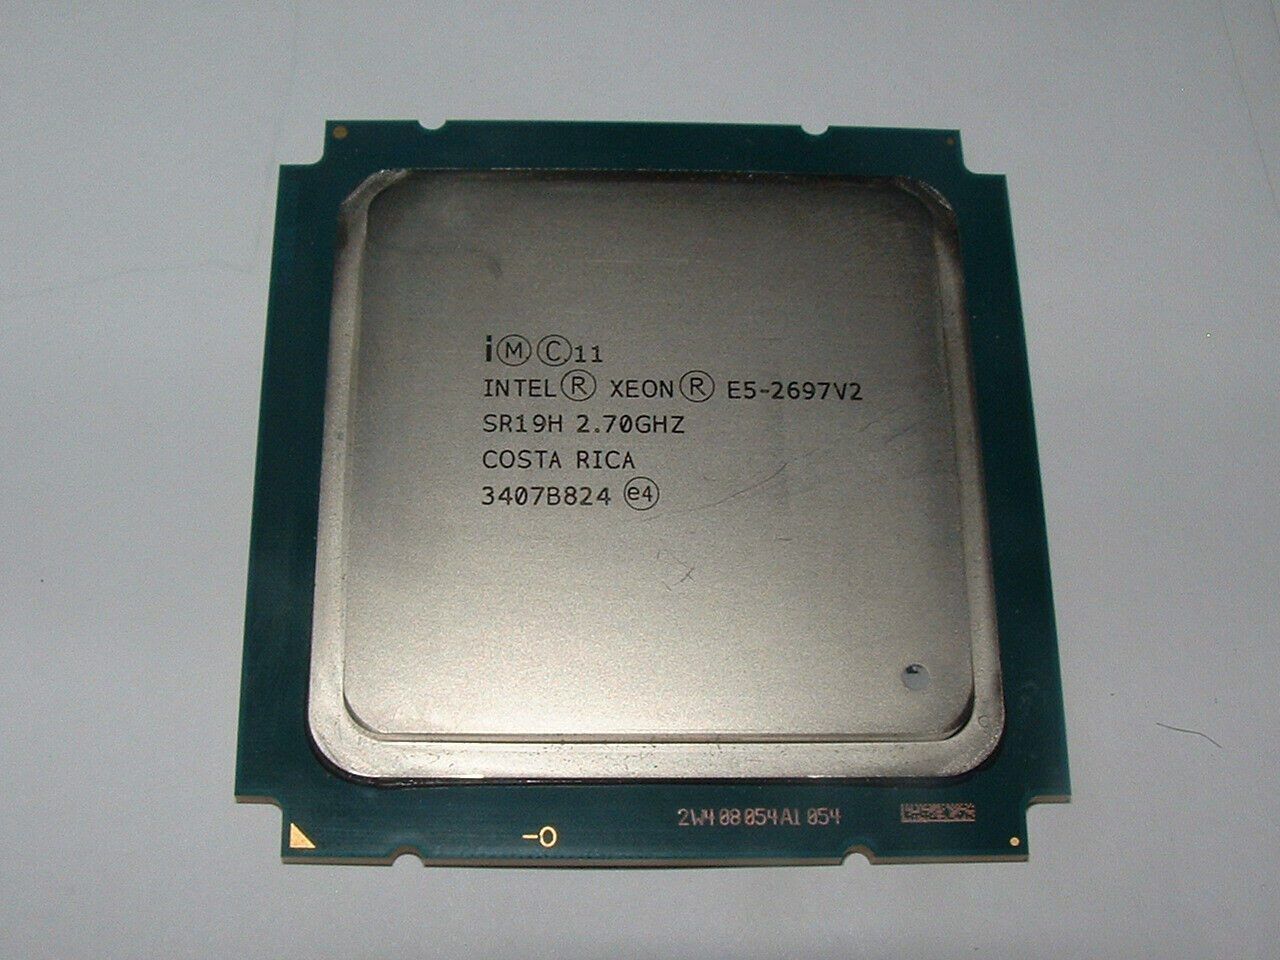 Intel Xeon E5-2697 v2 2.7GHz 30M 12-Core LGA2011 CPU Processor SR19H